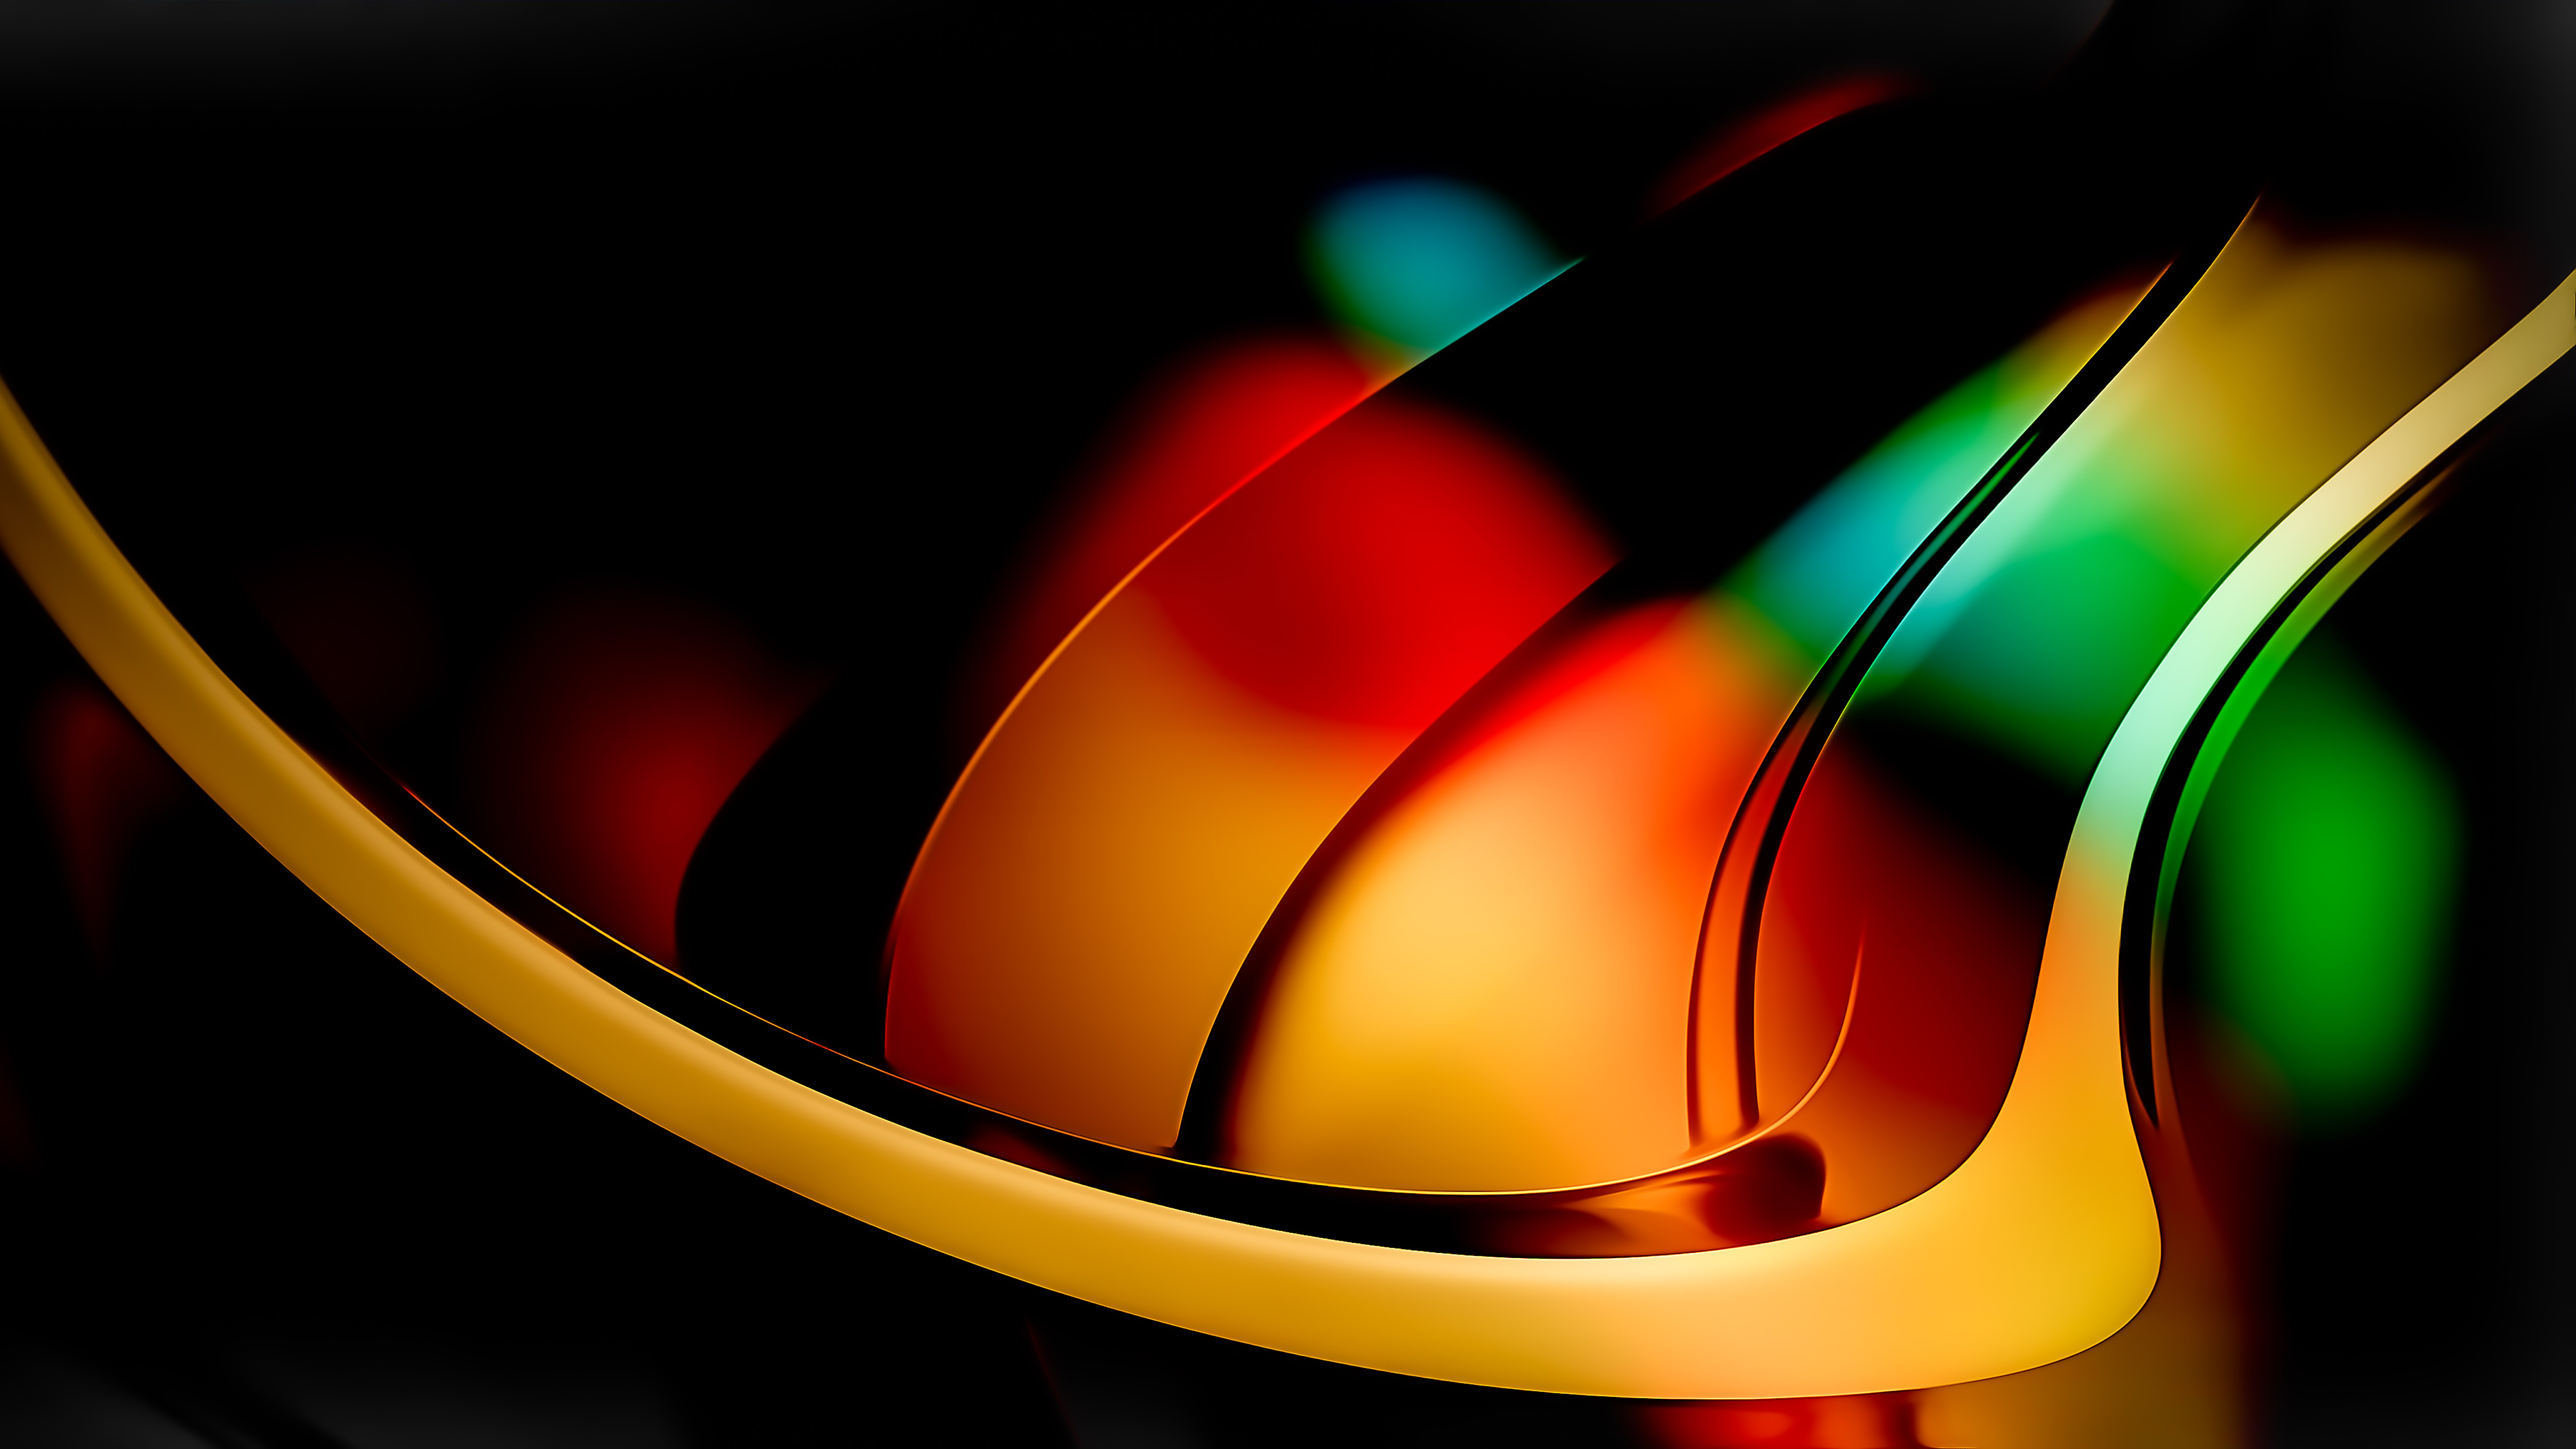 Fondos de pantalla Colores abstractos en luces